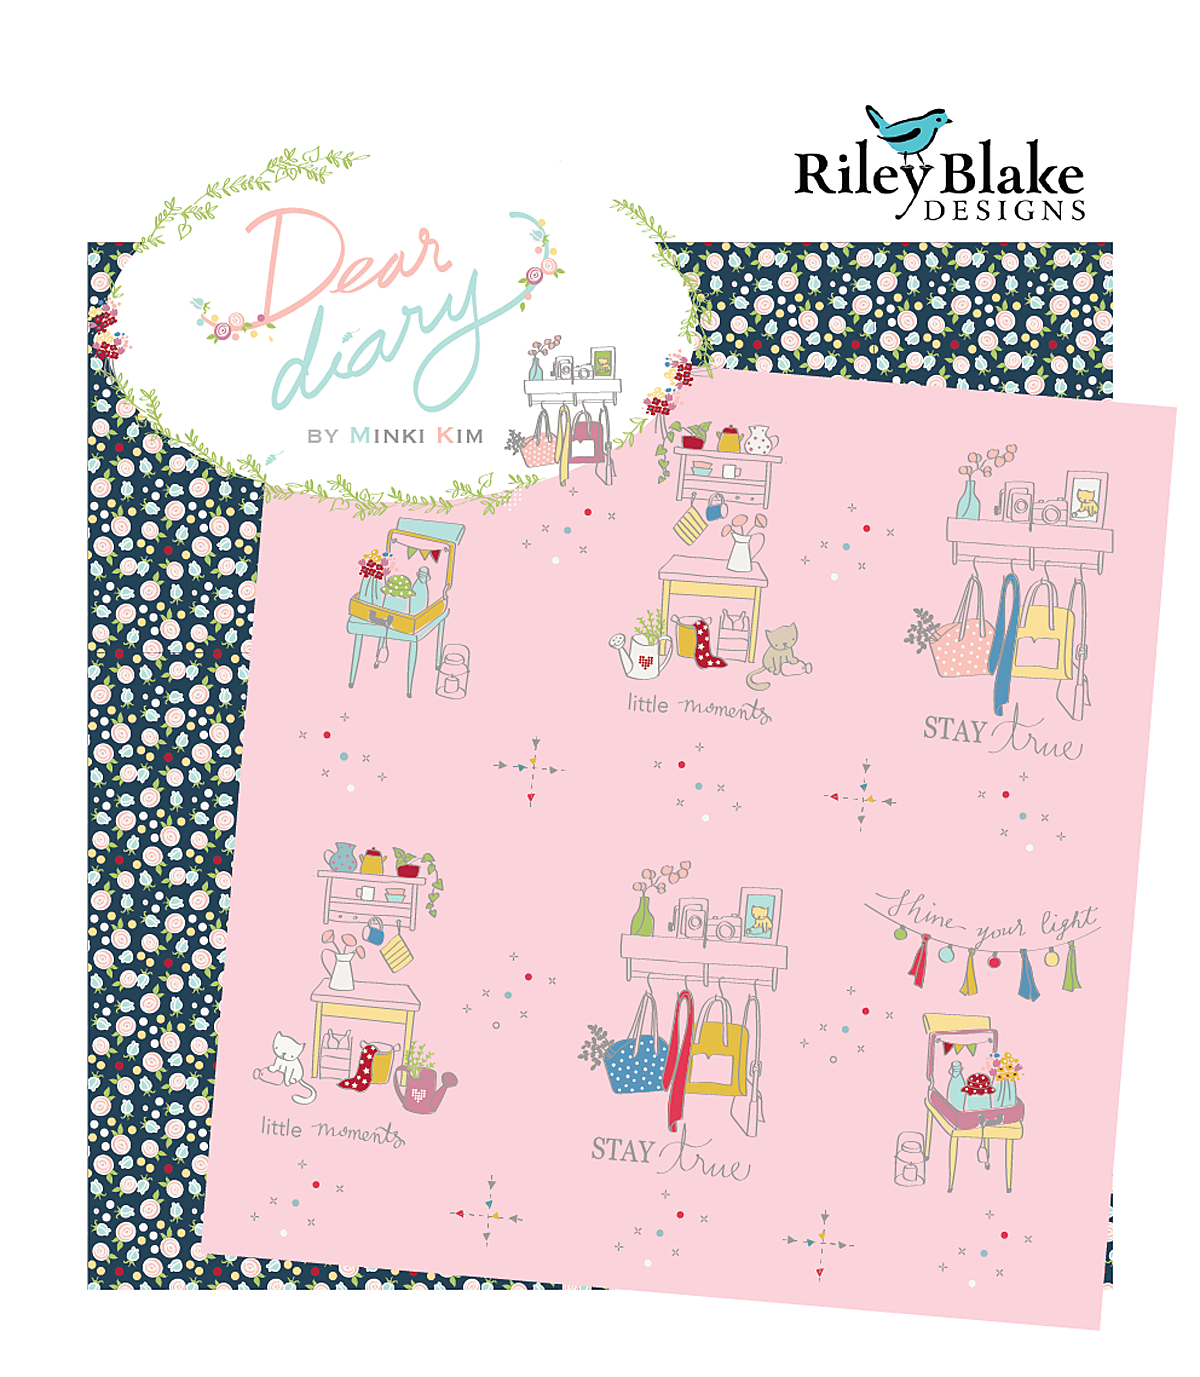 Dear Diary fabrics by Minki Kim